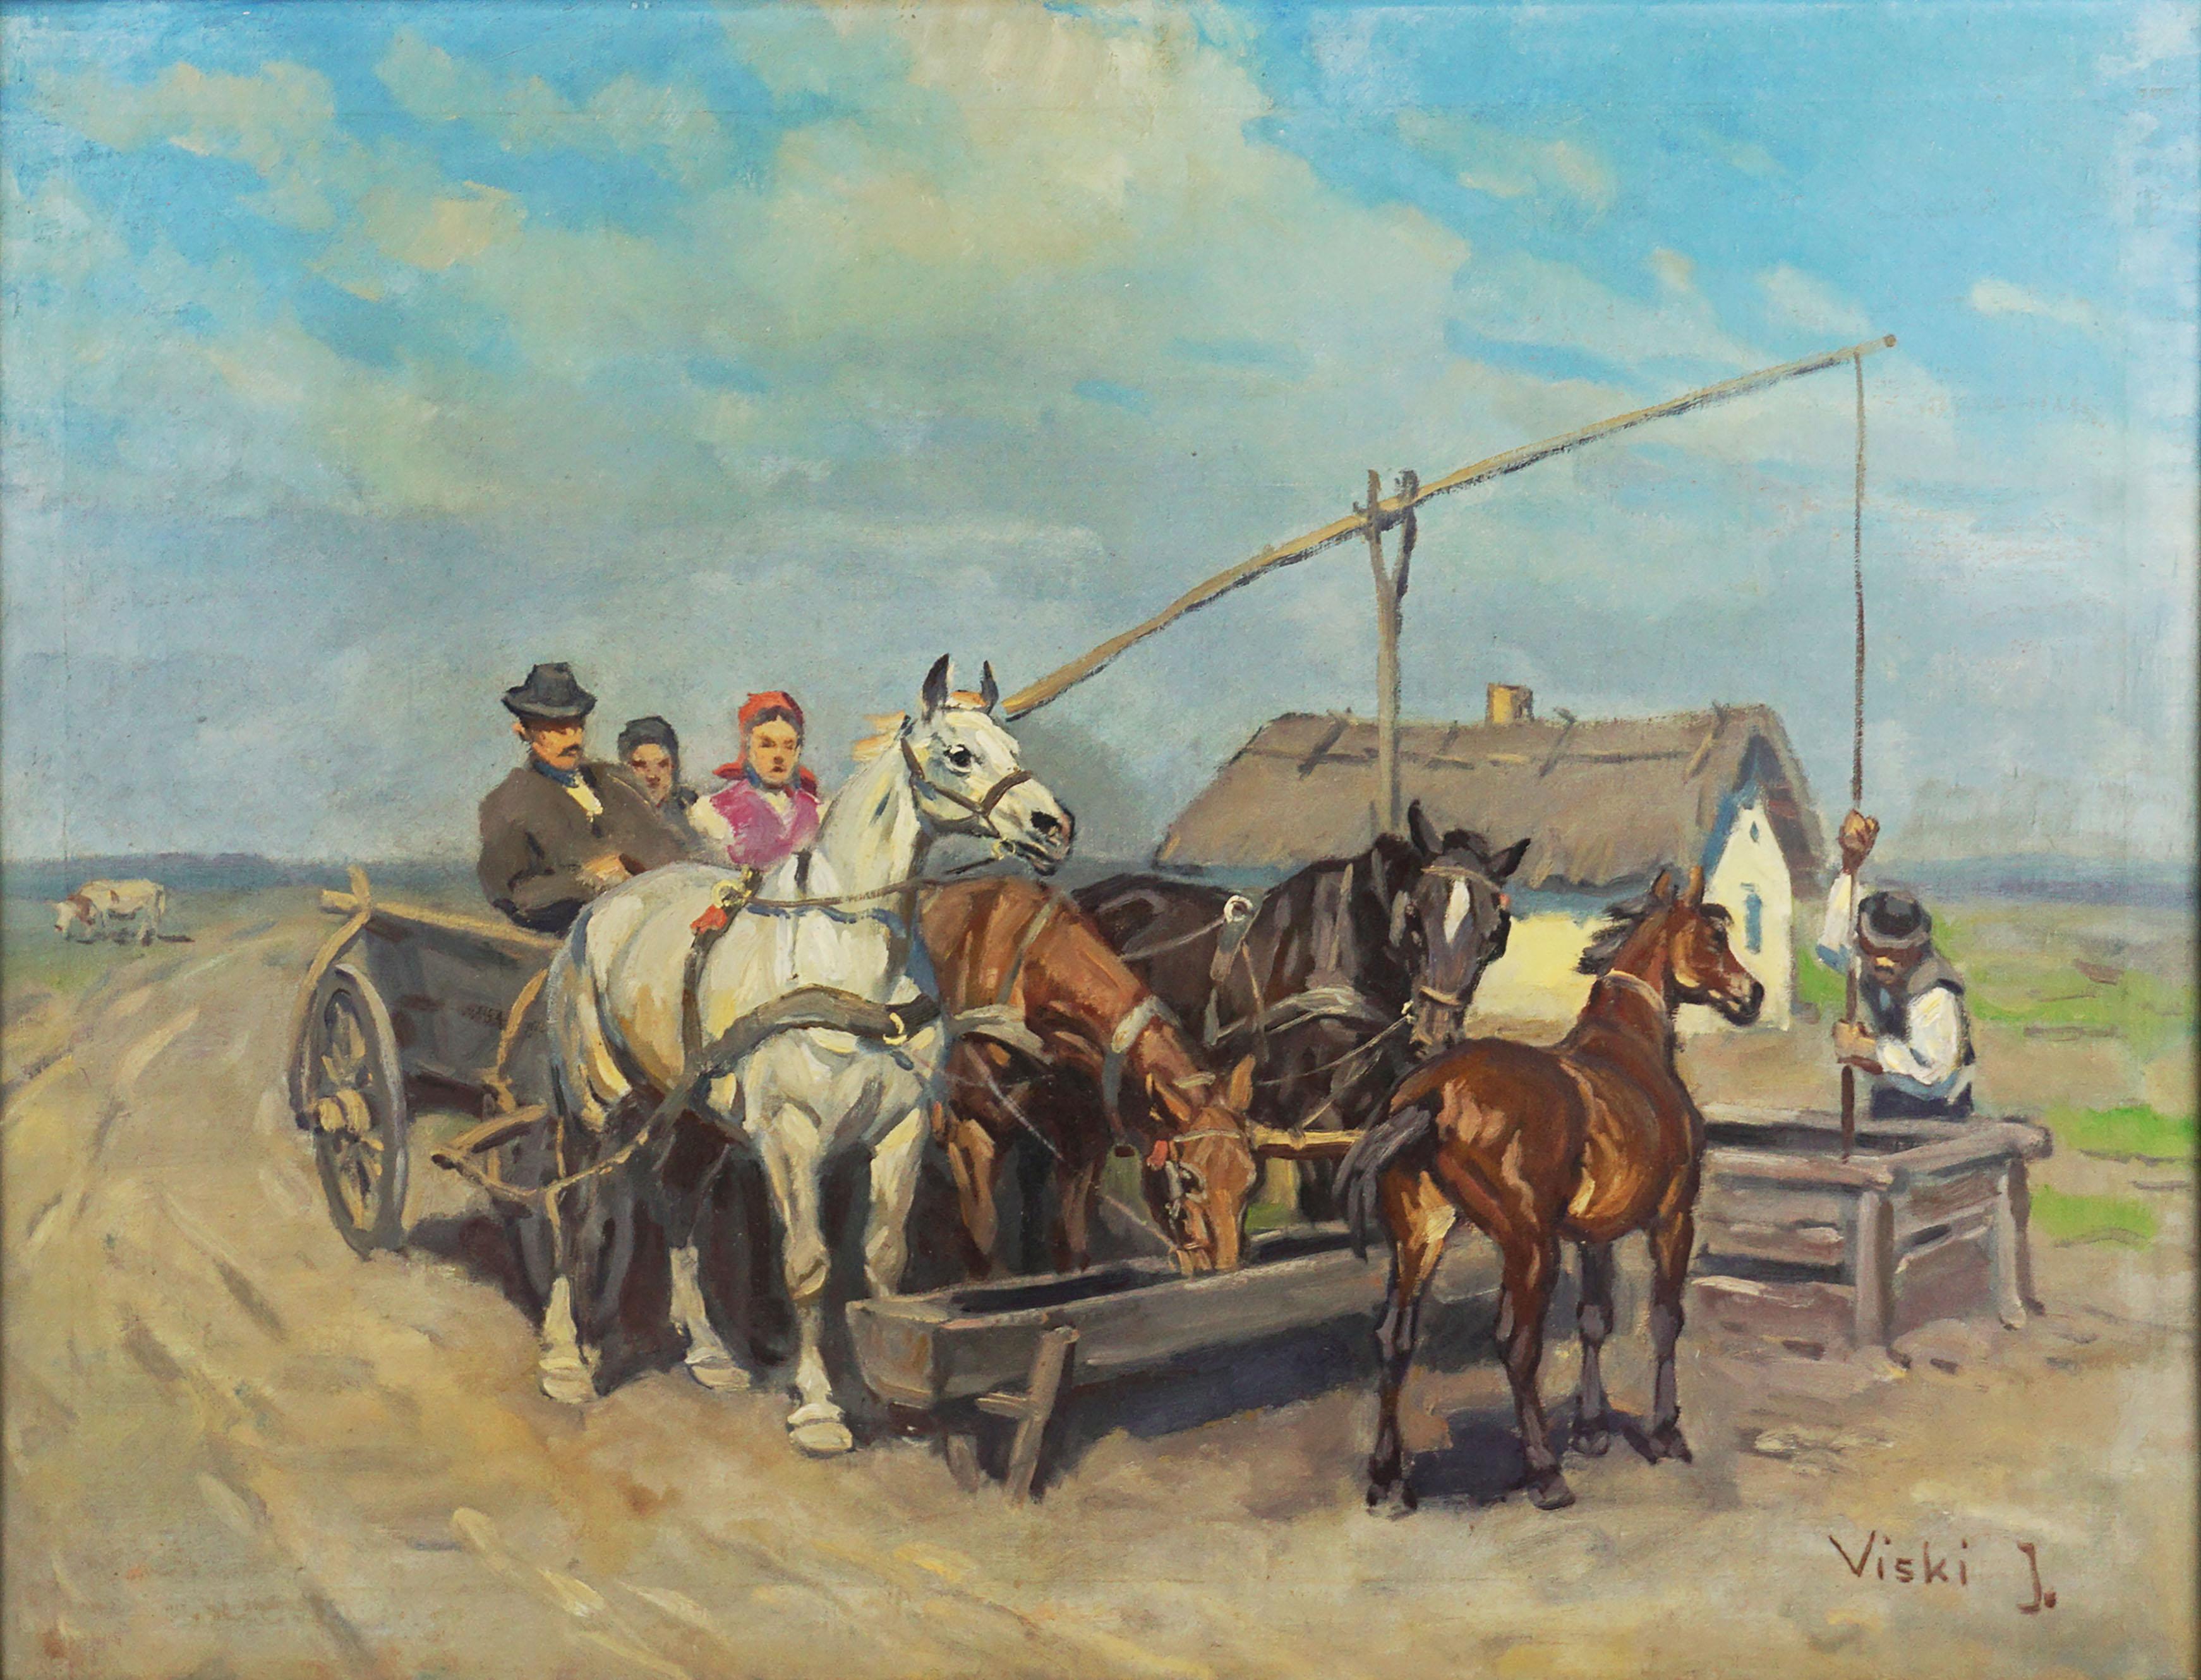 S'arrêtant à l'eau pour voir les chevaux acharnés - Figuratif - Painting de Janos Viski